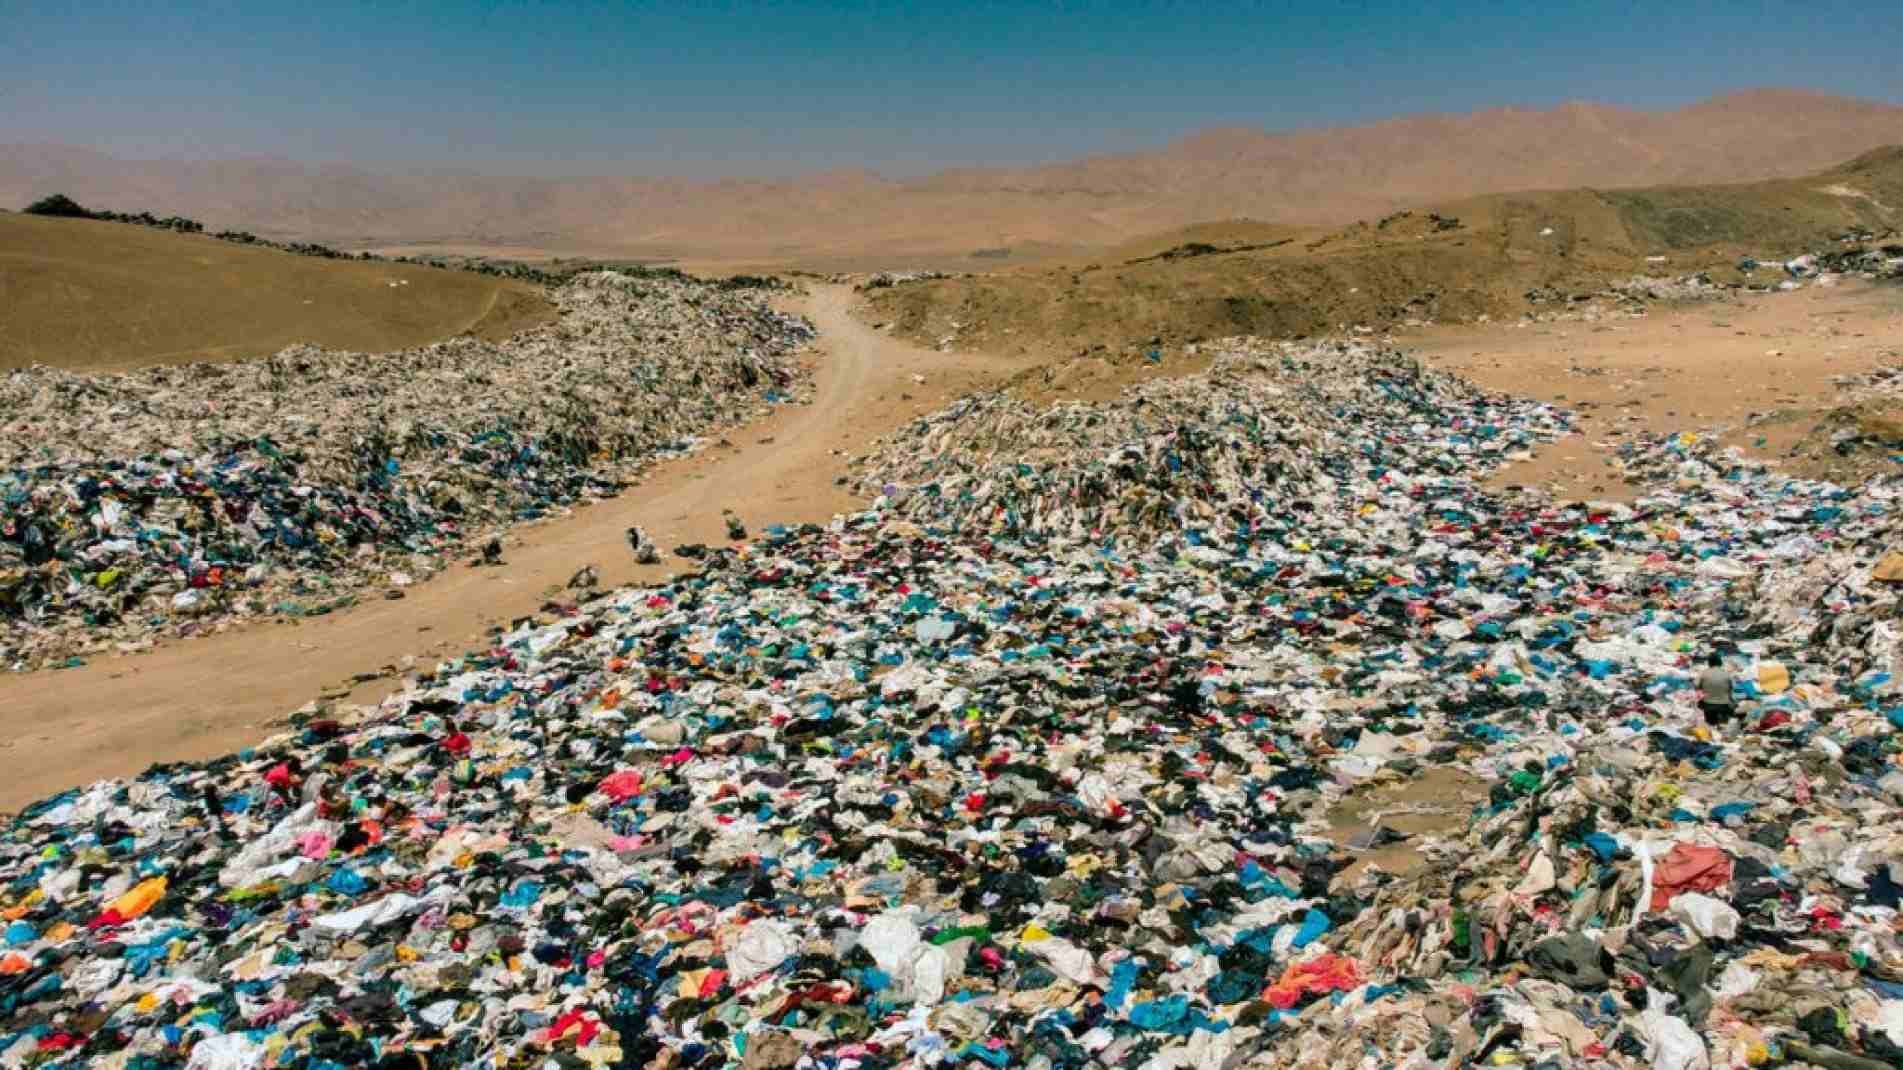 Milhares de peças de roupas descartadas no deserto do Atacama, no Chile